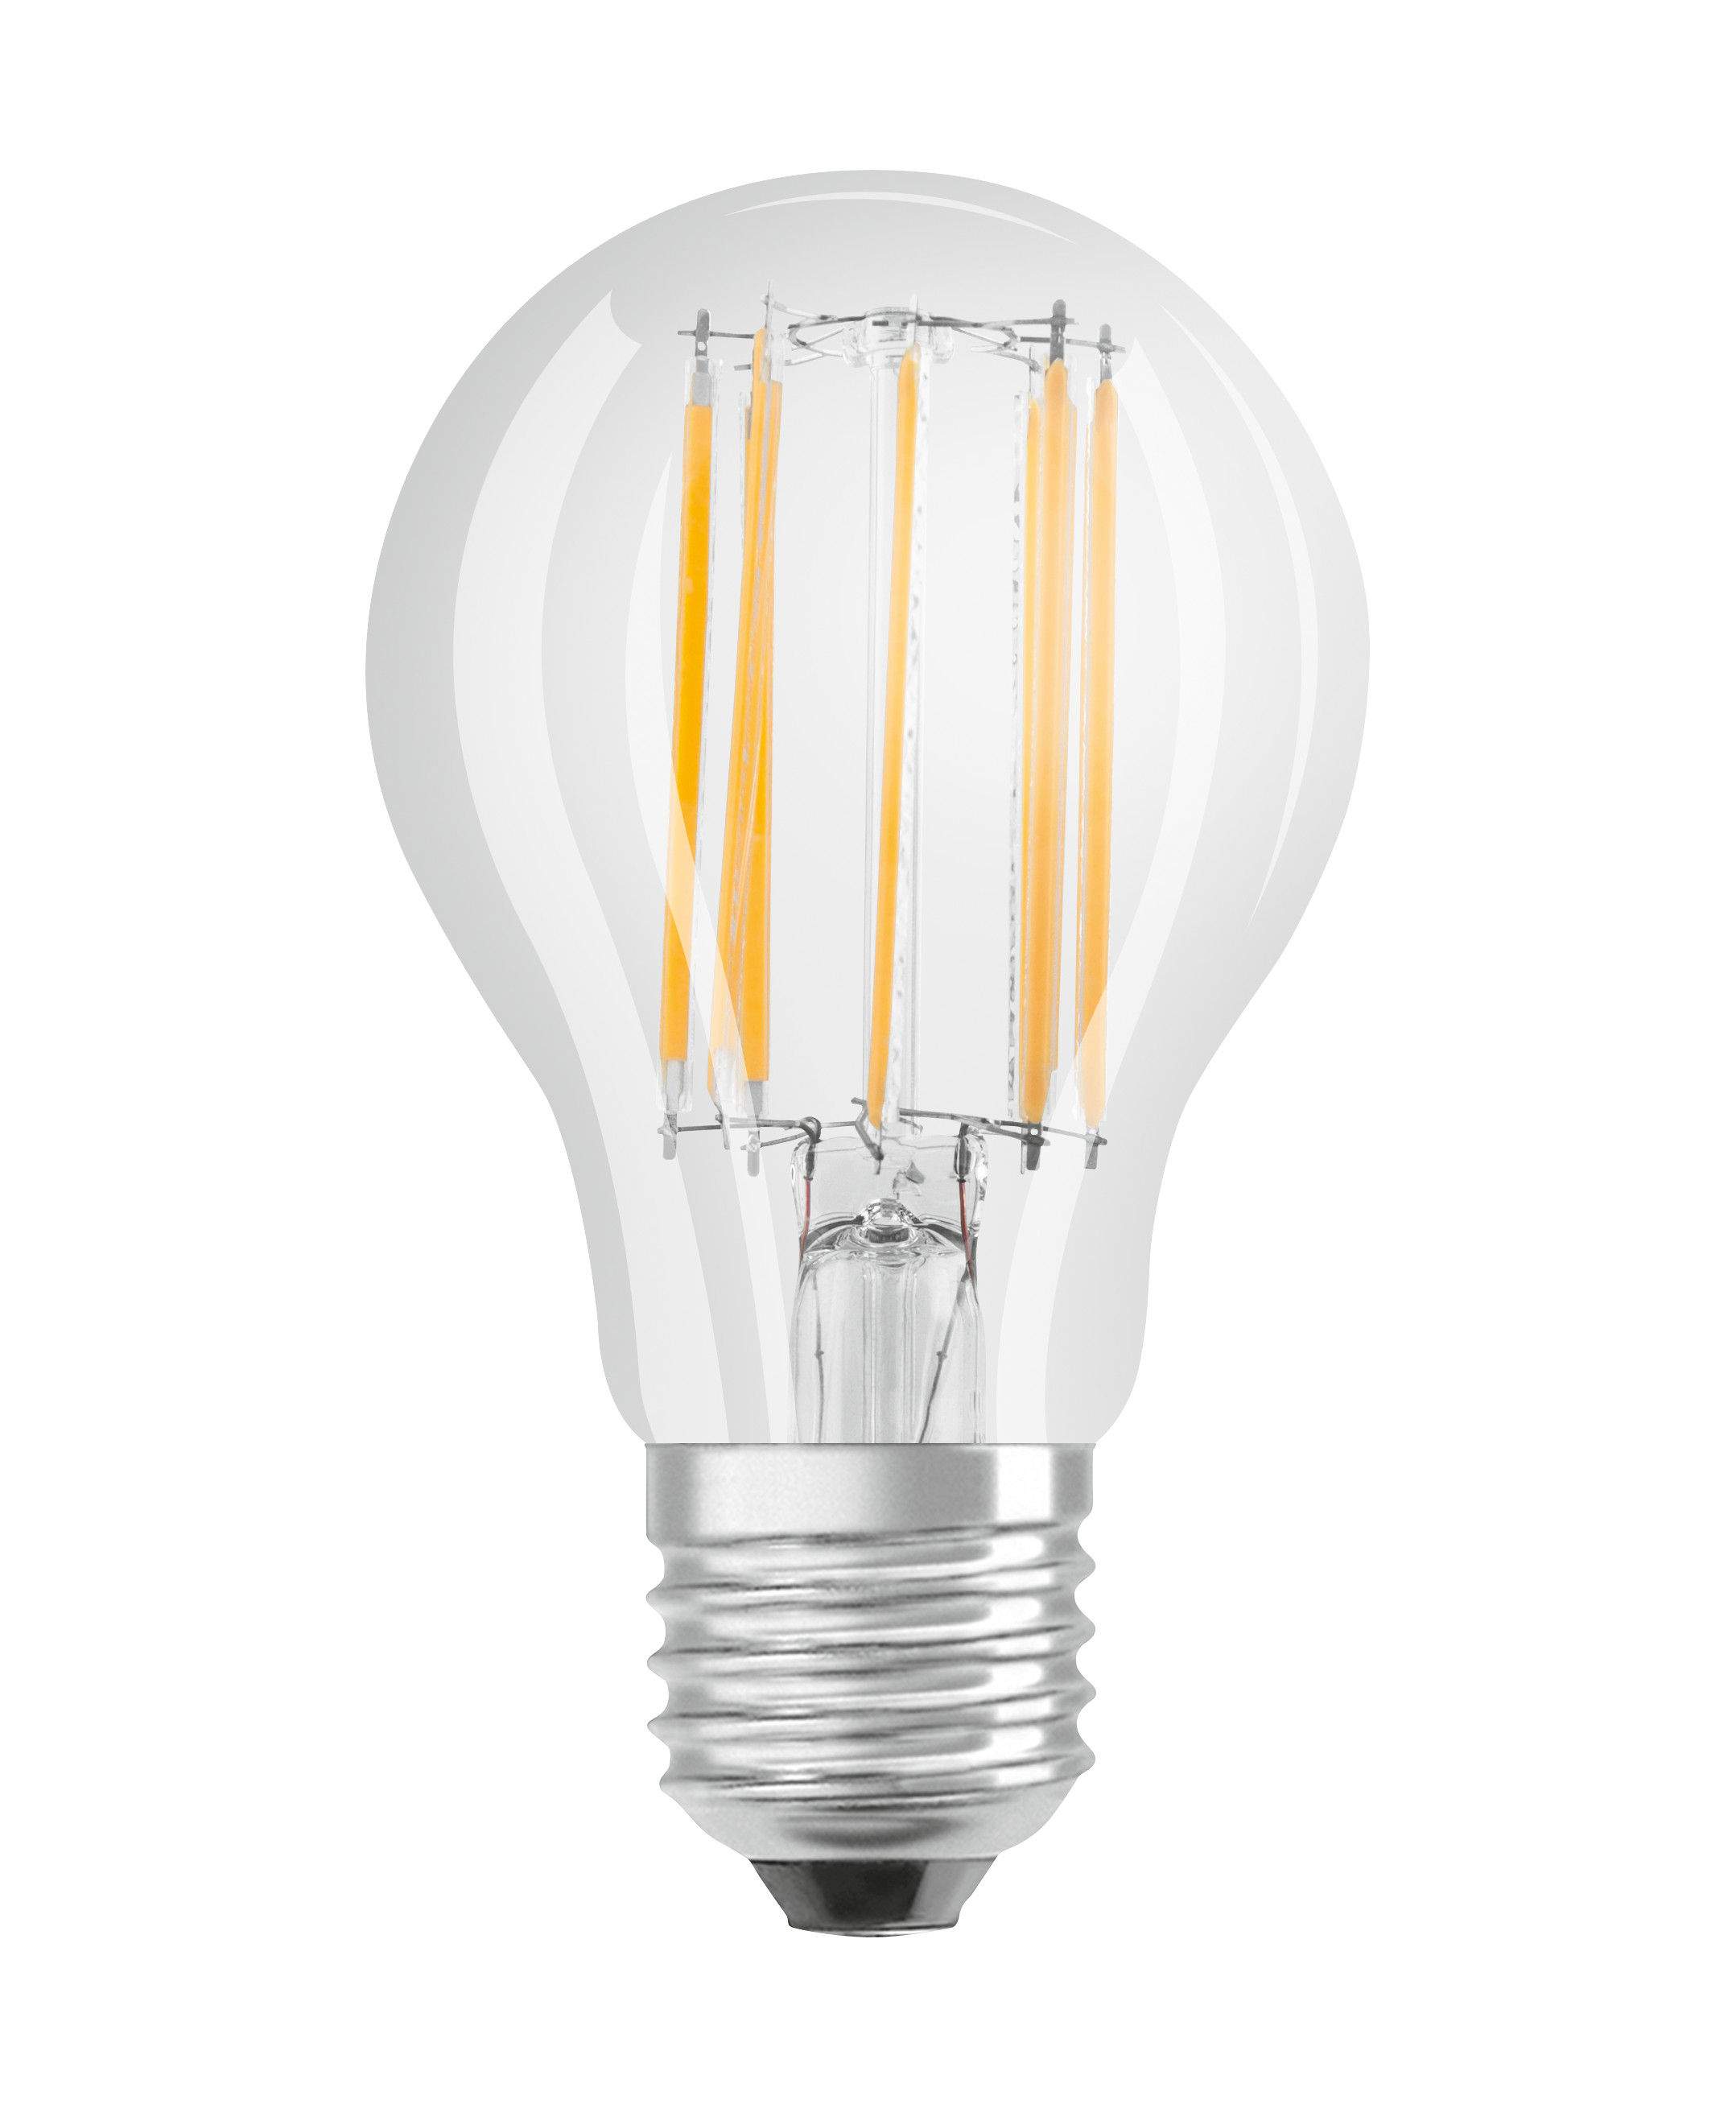 Ampoule LED verre transparent standard E27, 6.5W, blanc chaud.